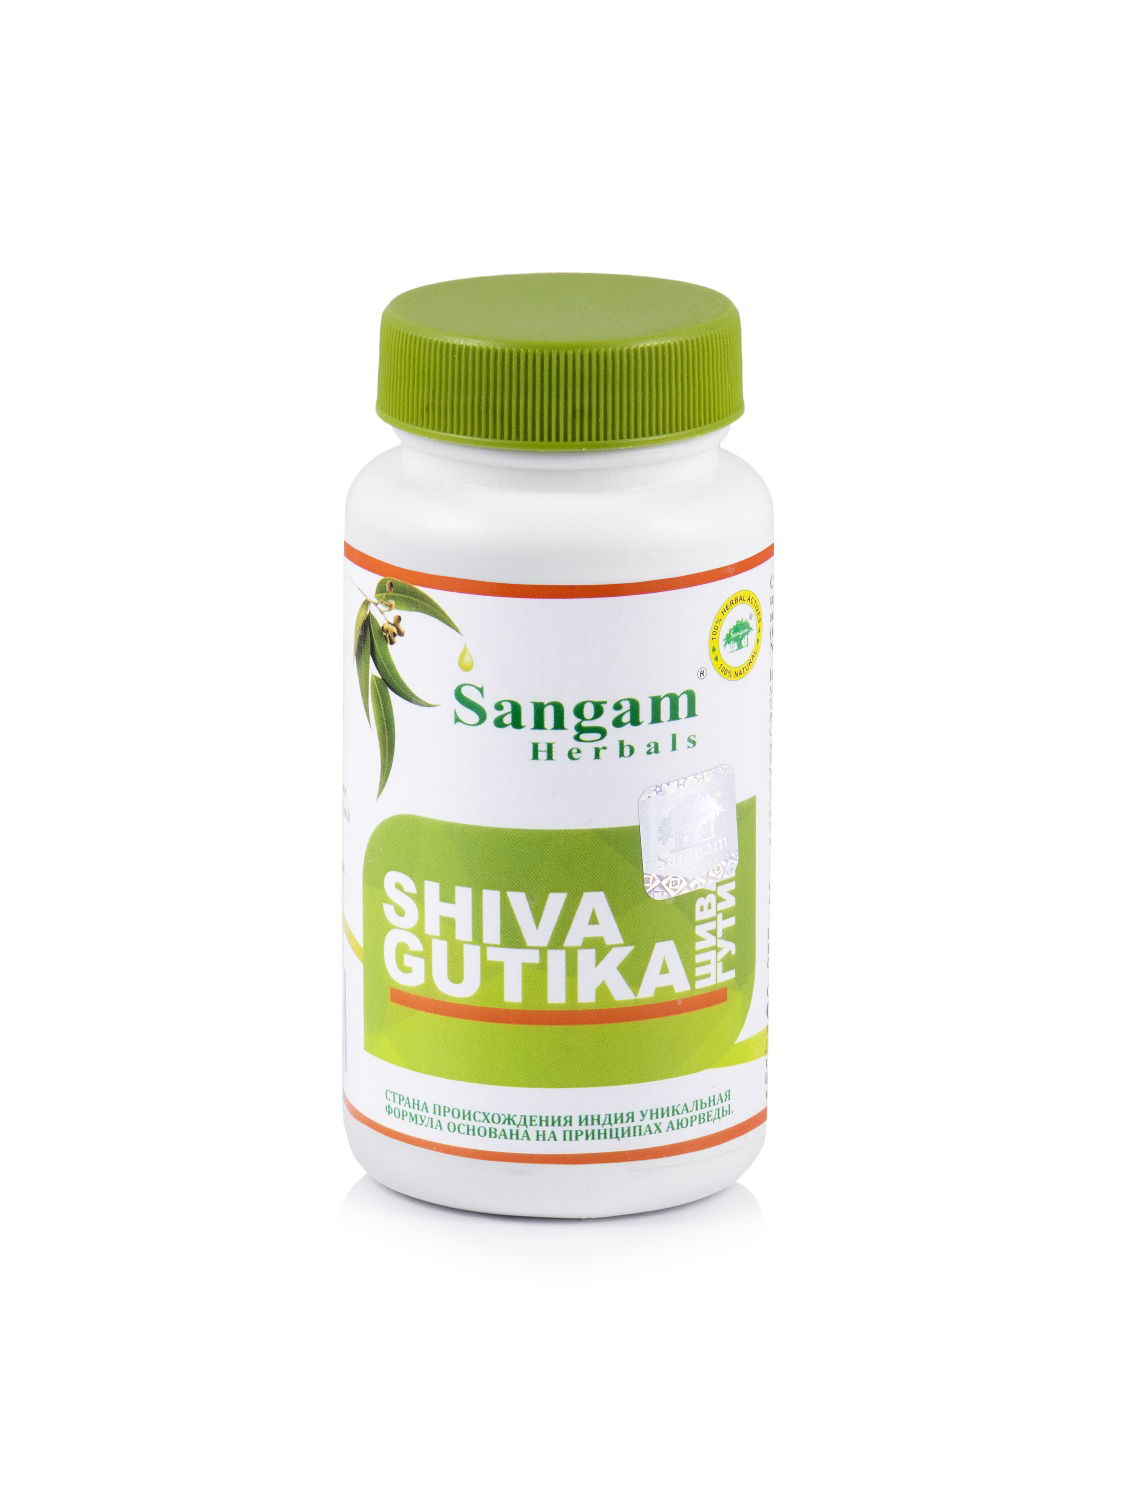 Шива Гутика Sangam Herbals (60 таблеток). 